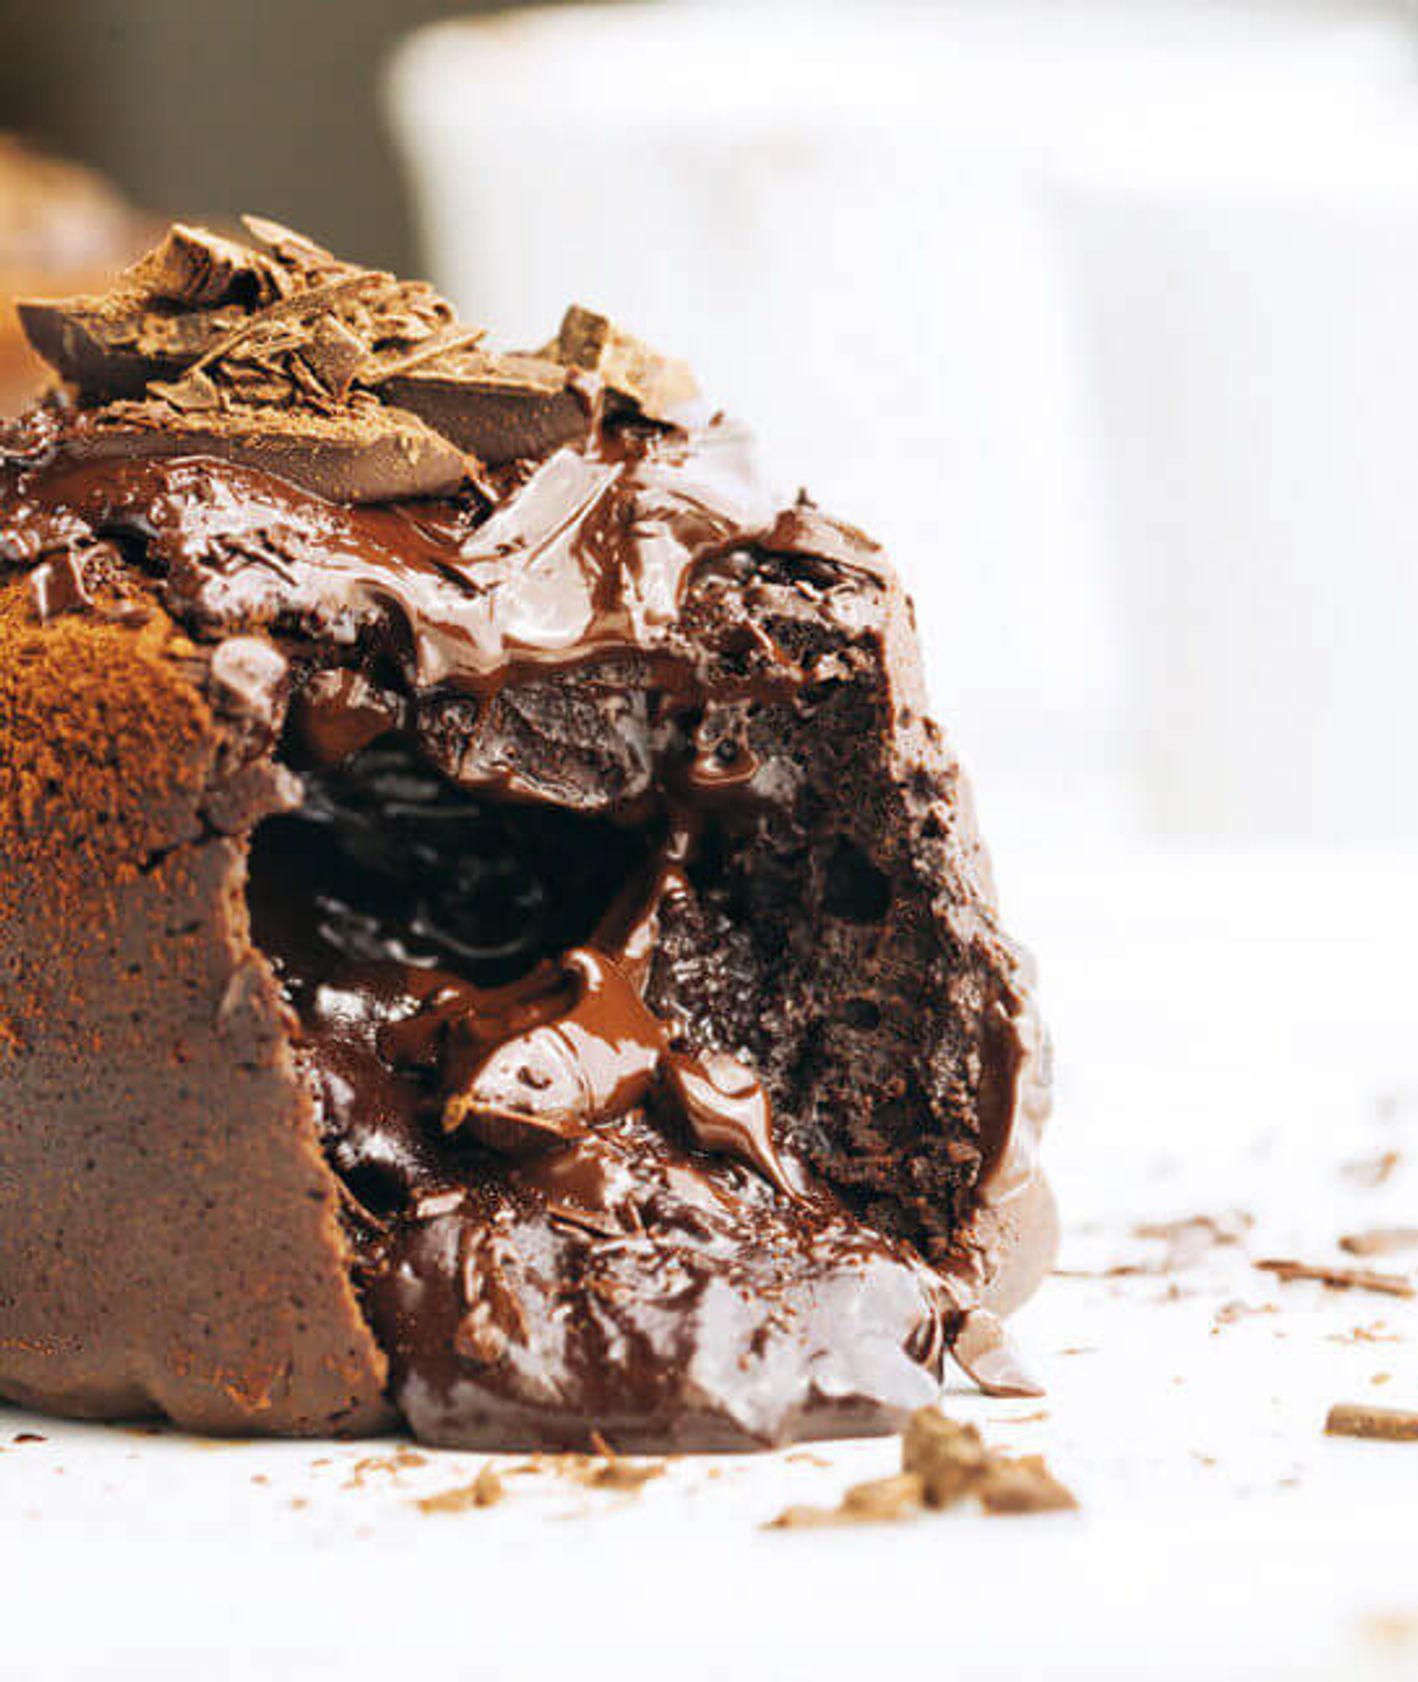 Zmysłowa lawa czekoladowa, delikatne ciastko i mocno czekoladowy płynny środek (fot. Monika Walecka)